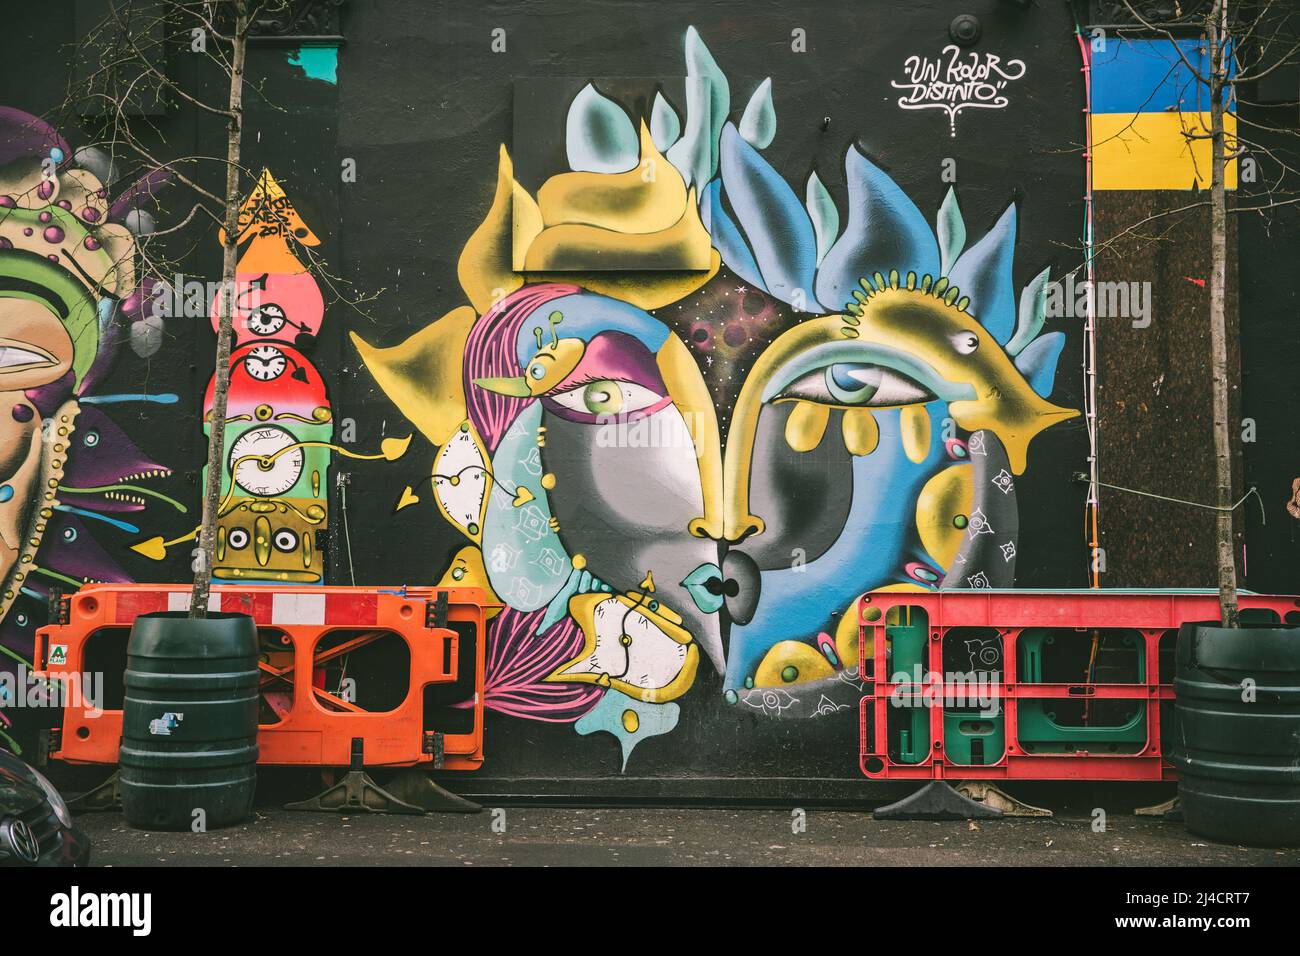 Shoreditch, Londra, Regno Unito - 14 aprile 2016: Murale della Street art di East London, con alcune barriere di sicurezza davanti ad esso. Il murale è un'immagine astratta. Foto Stock